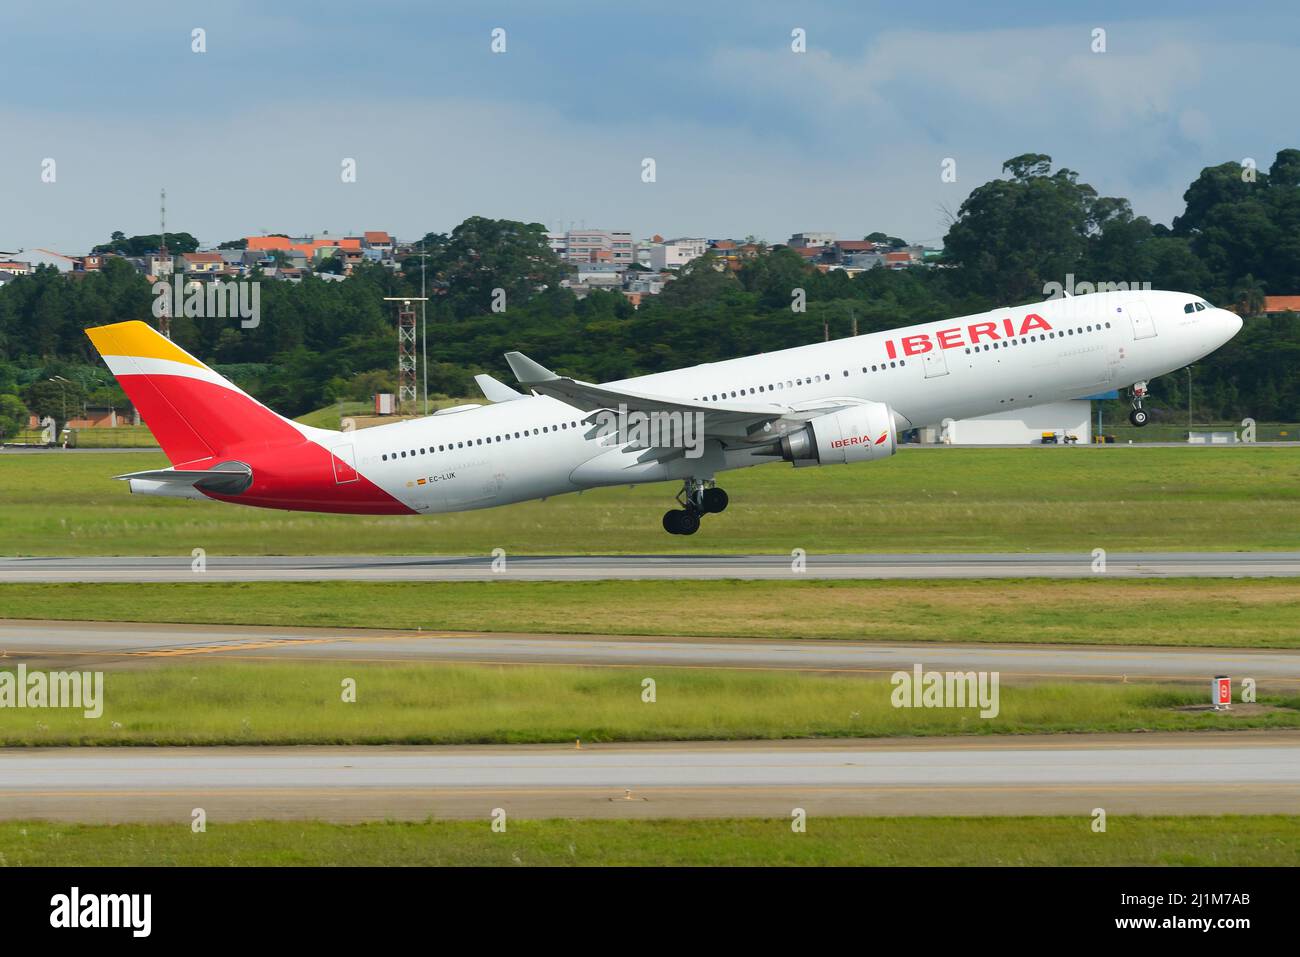 Iberia Airbus A330 velivolo in partenza da San Paolo, Brasile diretto a Madrid, Spagna. Aereo A330-300 della compagnia aerea noto come Iberia Lineas Aereas. Foto Stock